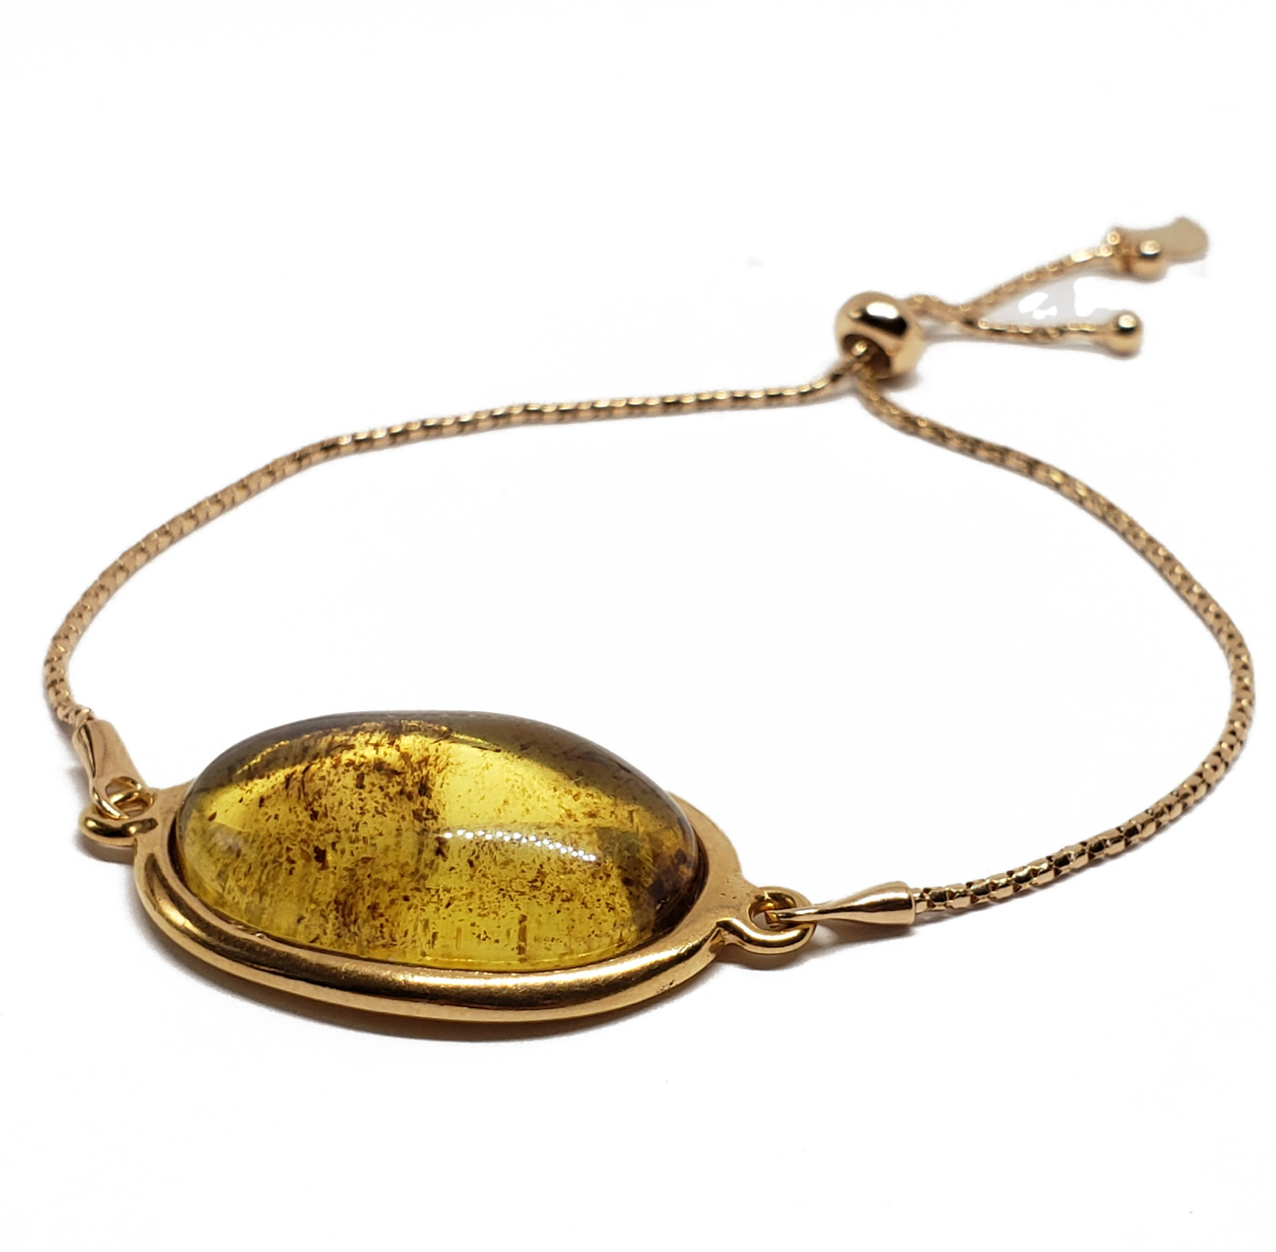 Natural Color Amber + Gold Lariat || Adult Bracelet